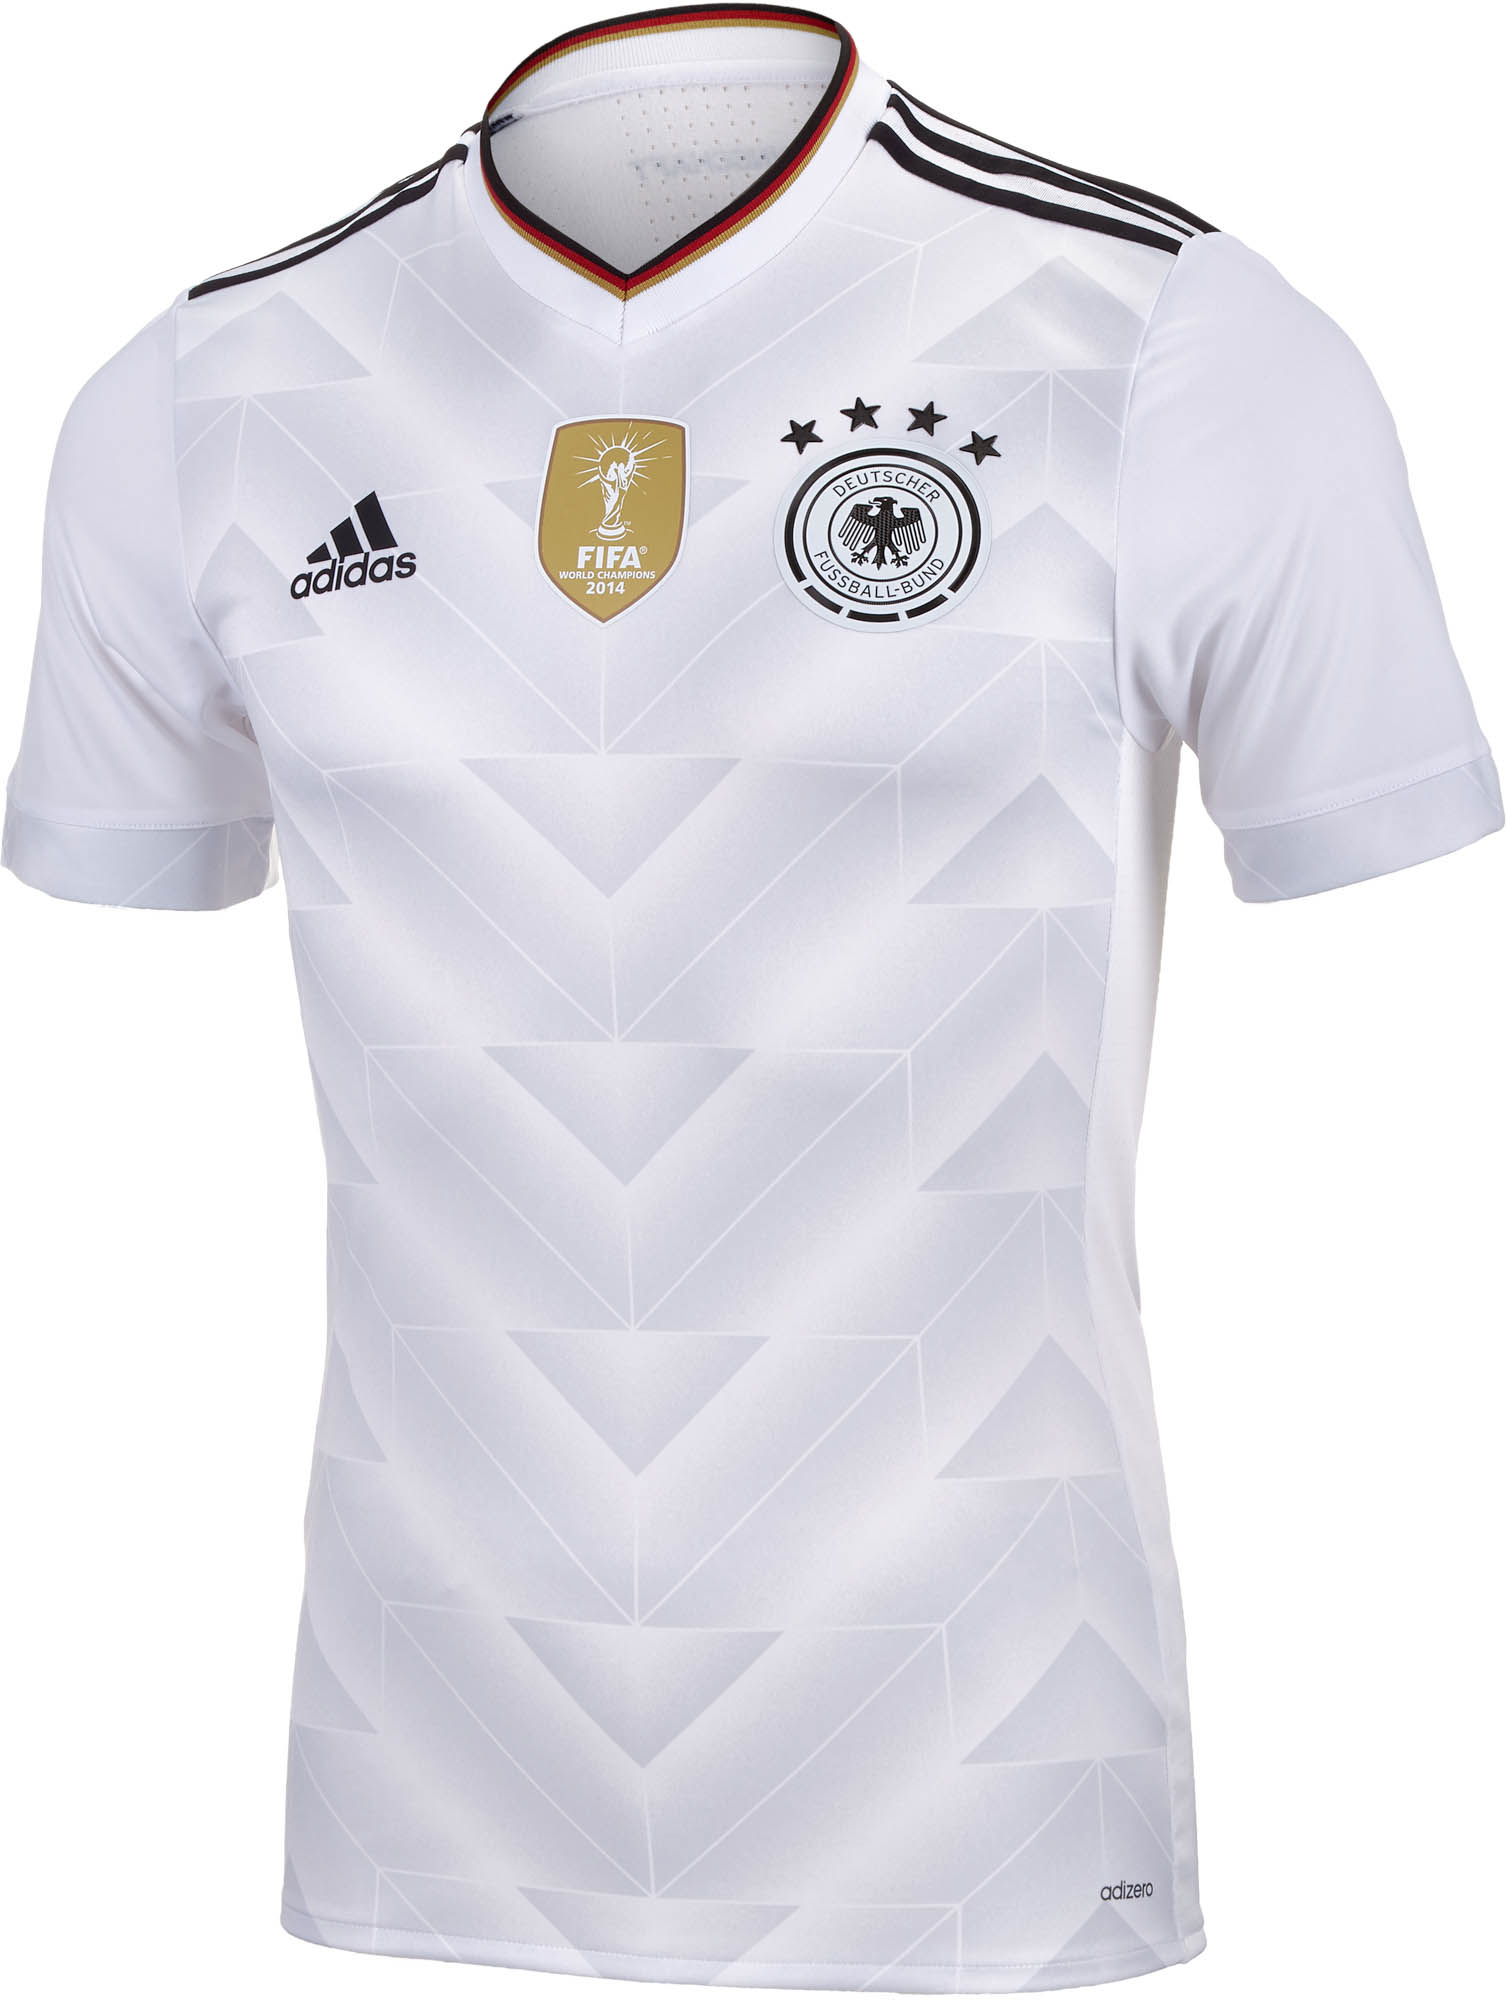 germany soccer jersey 2014